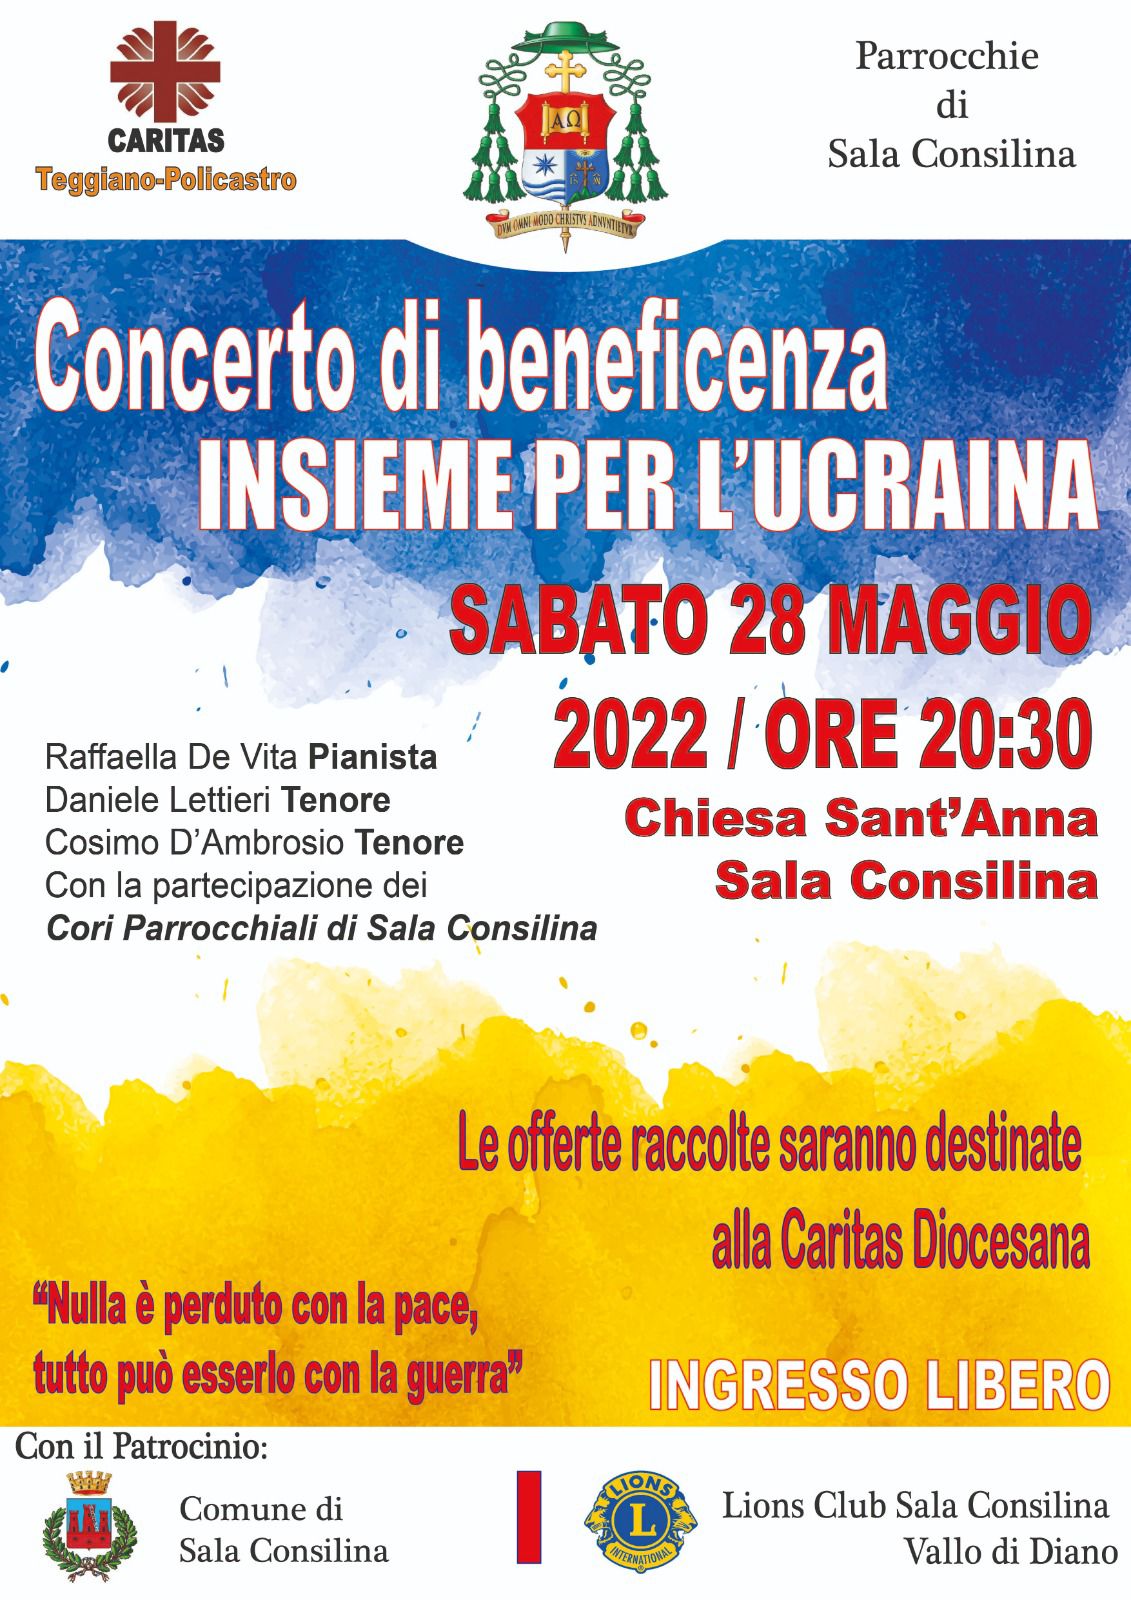 Concerto di beneficenza "INSIEME PER L'UCRAINA"